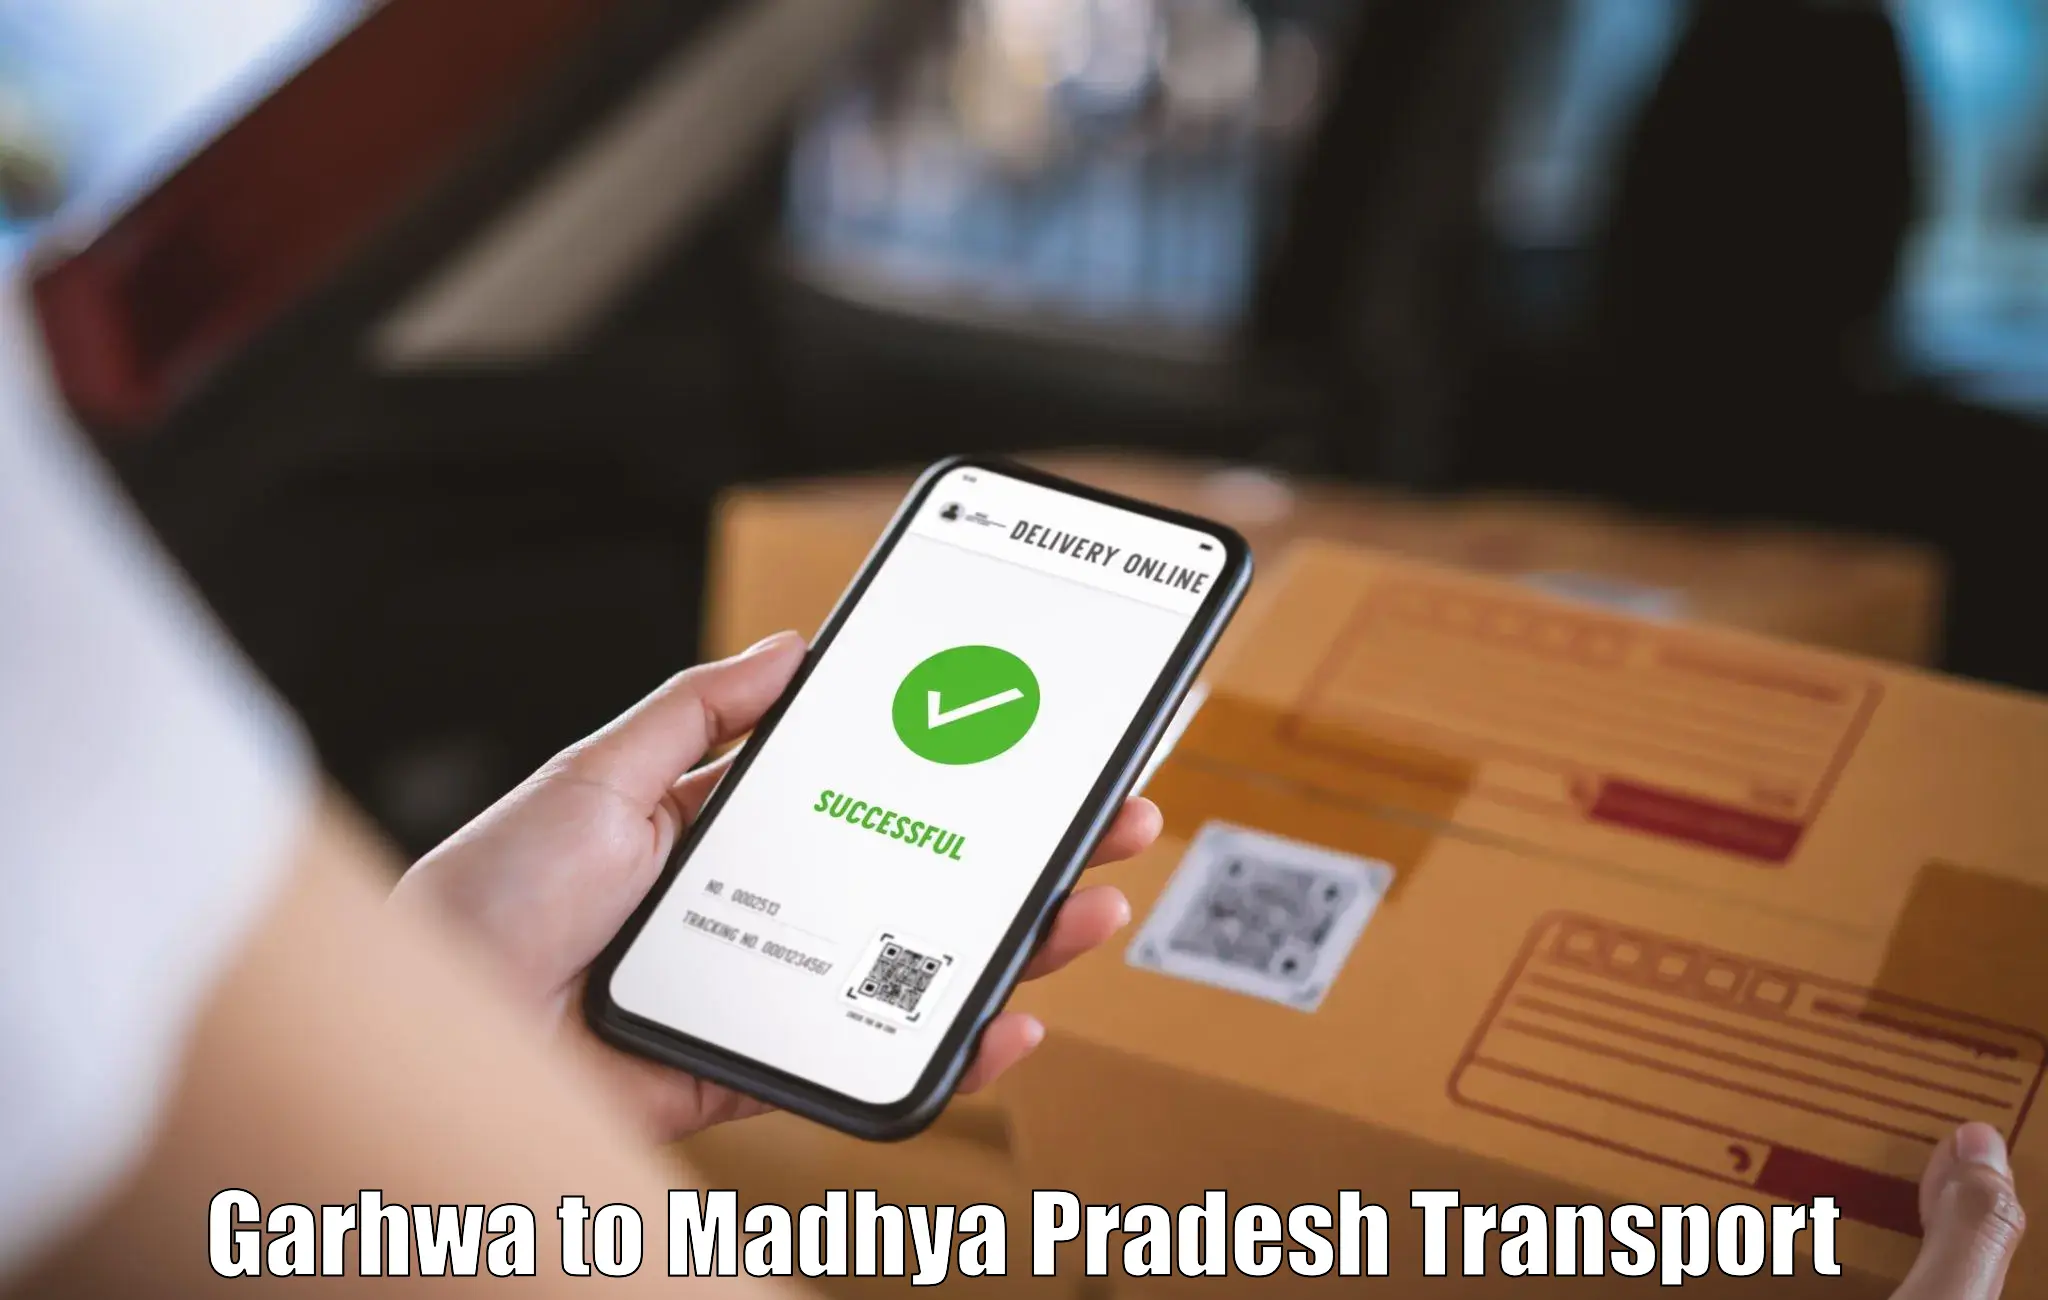 Online transport service Garhwa to Indore